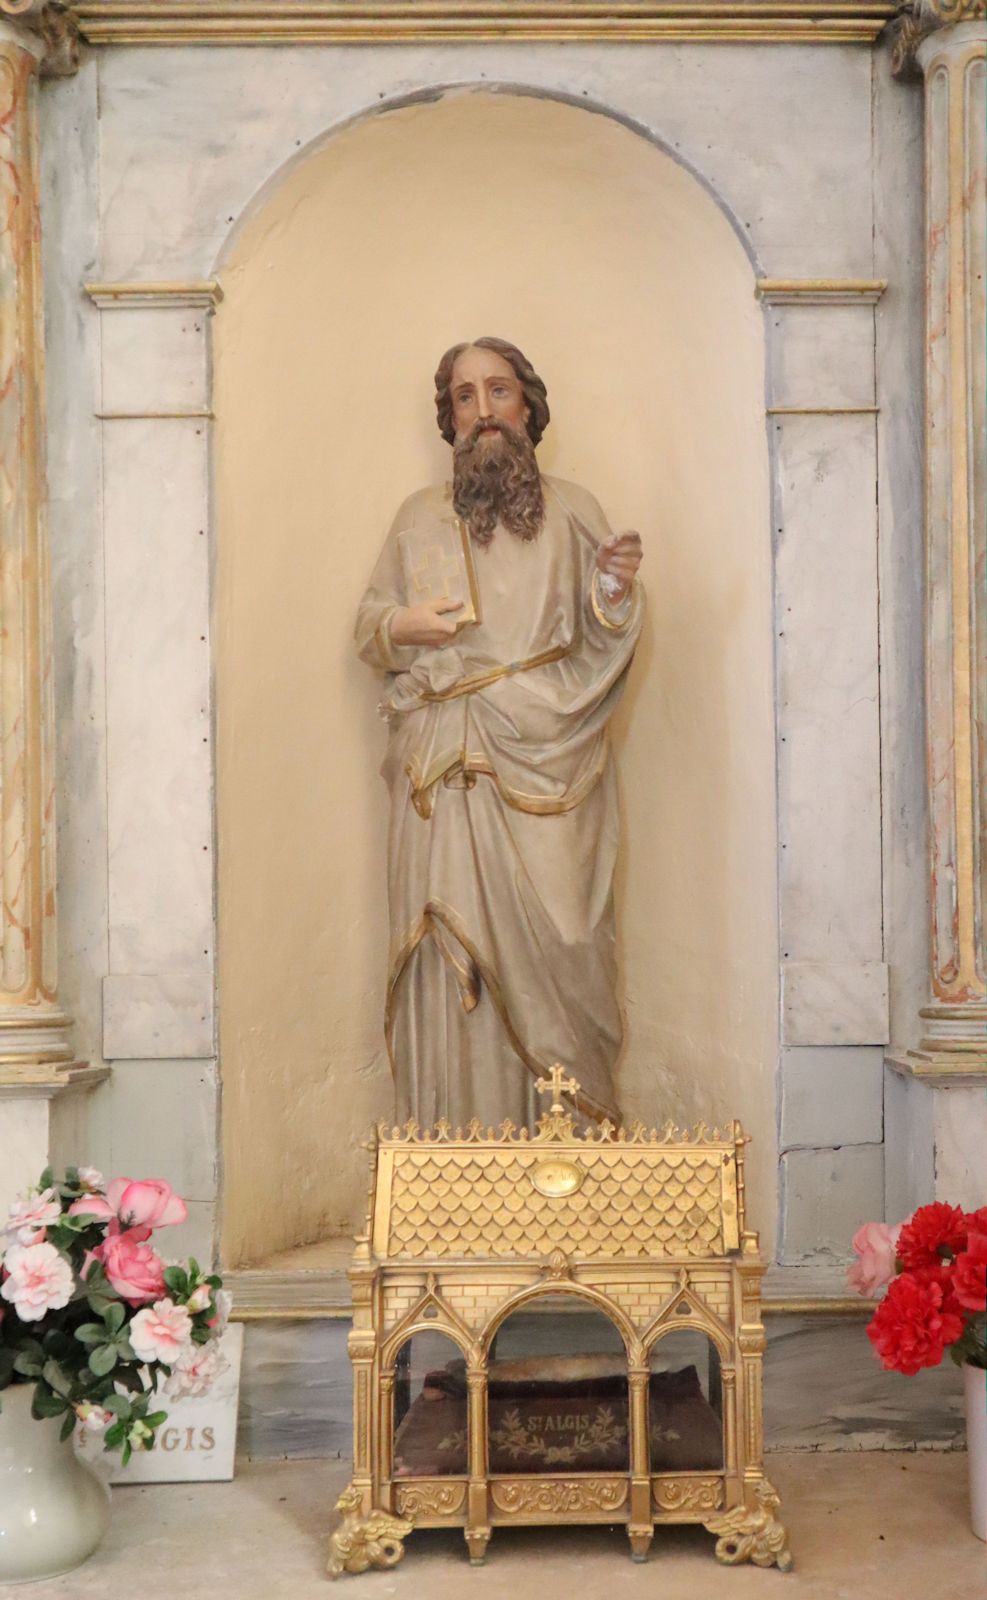 Statue und Reliquiar in der Pfarrkirche in St-Algis